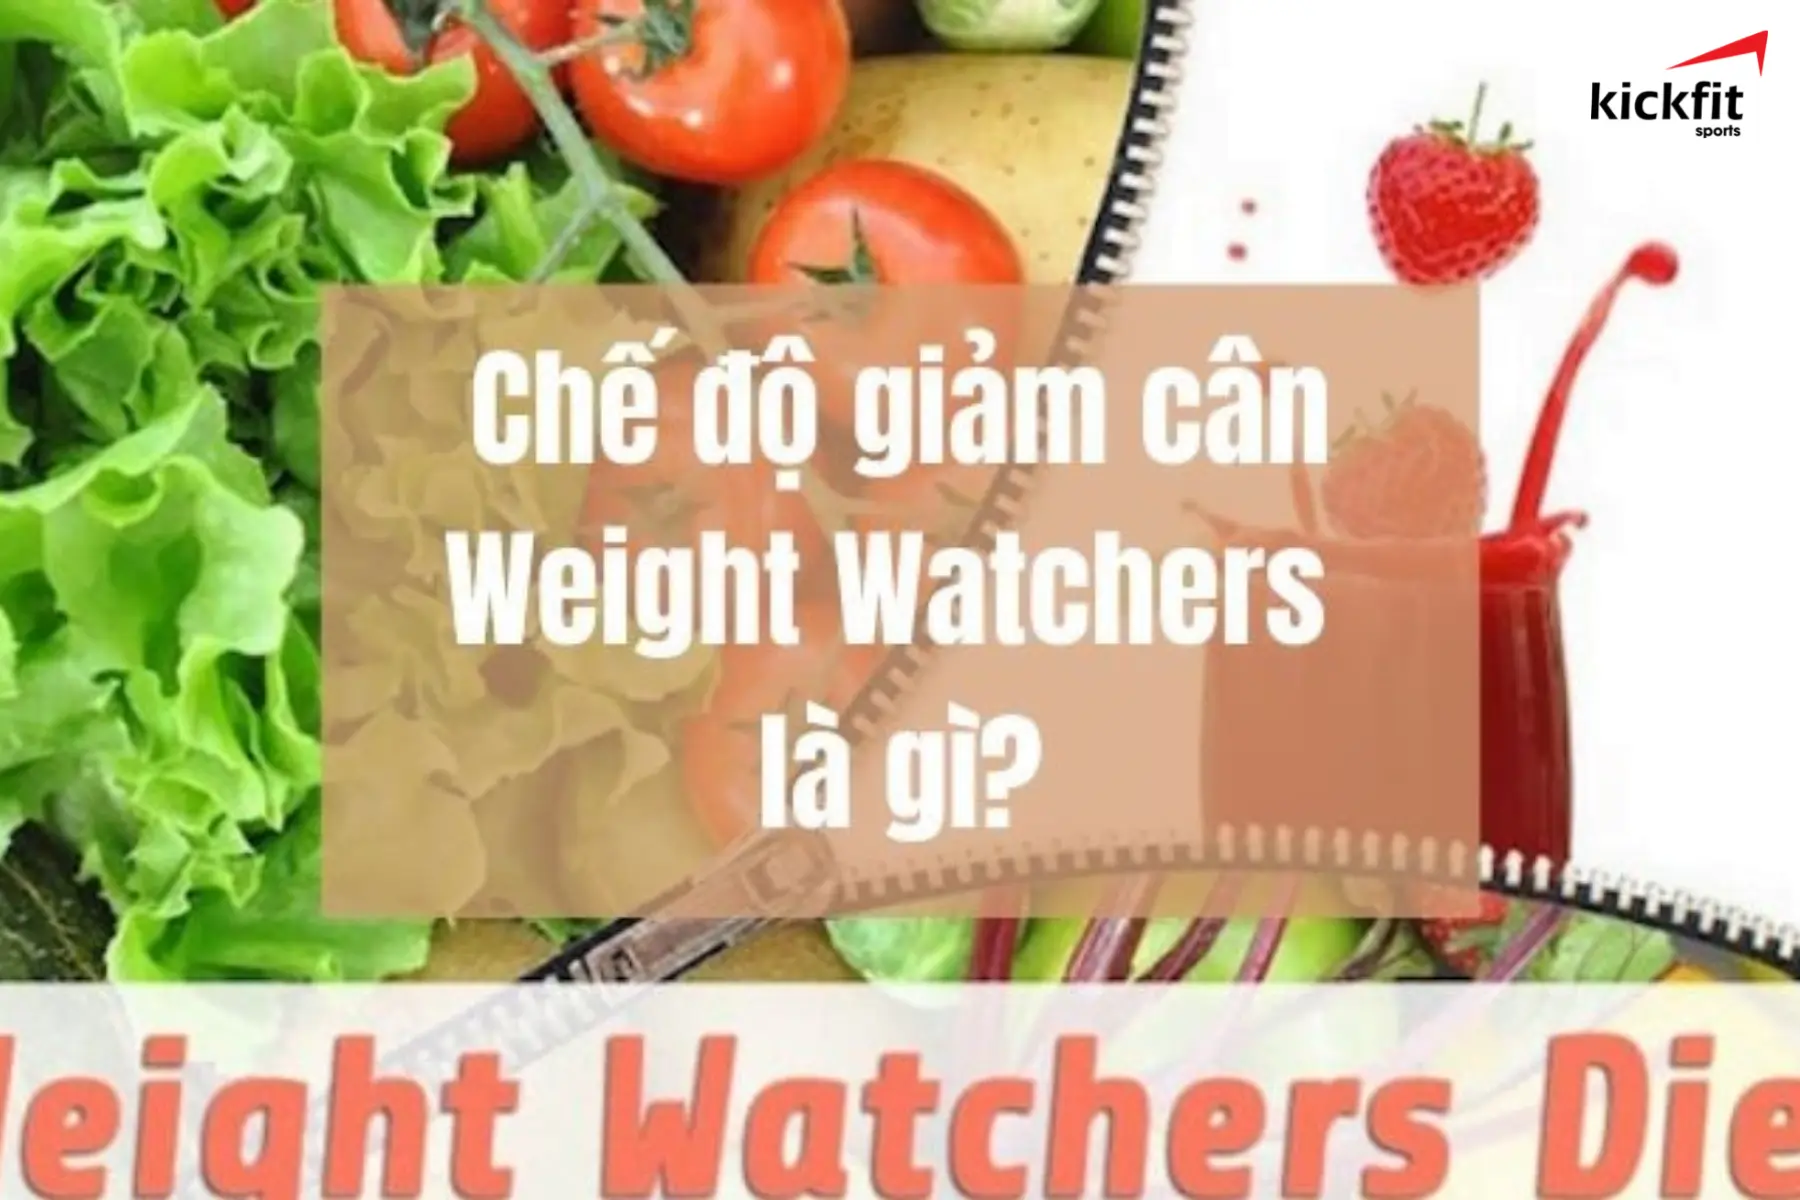 Chế độ dinh dưỡng giảm cân weight watchers là gì?